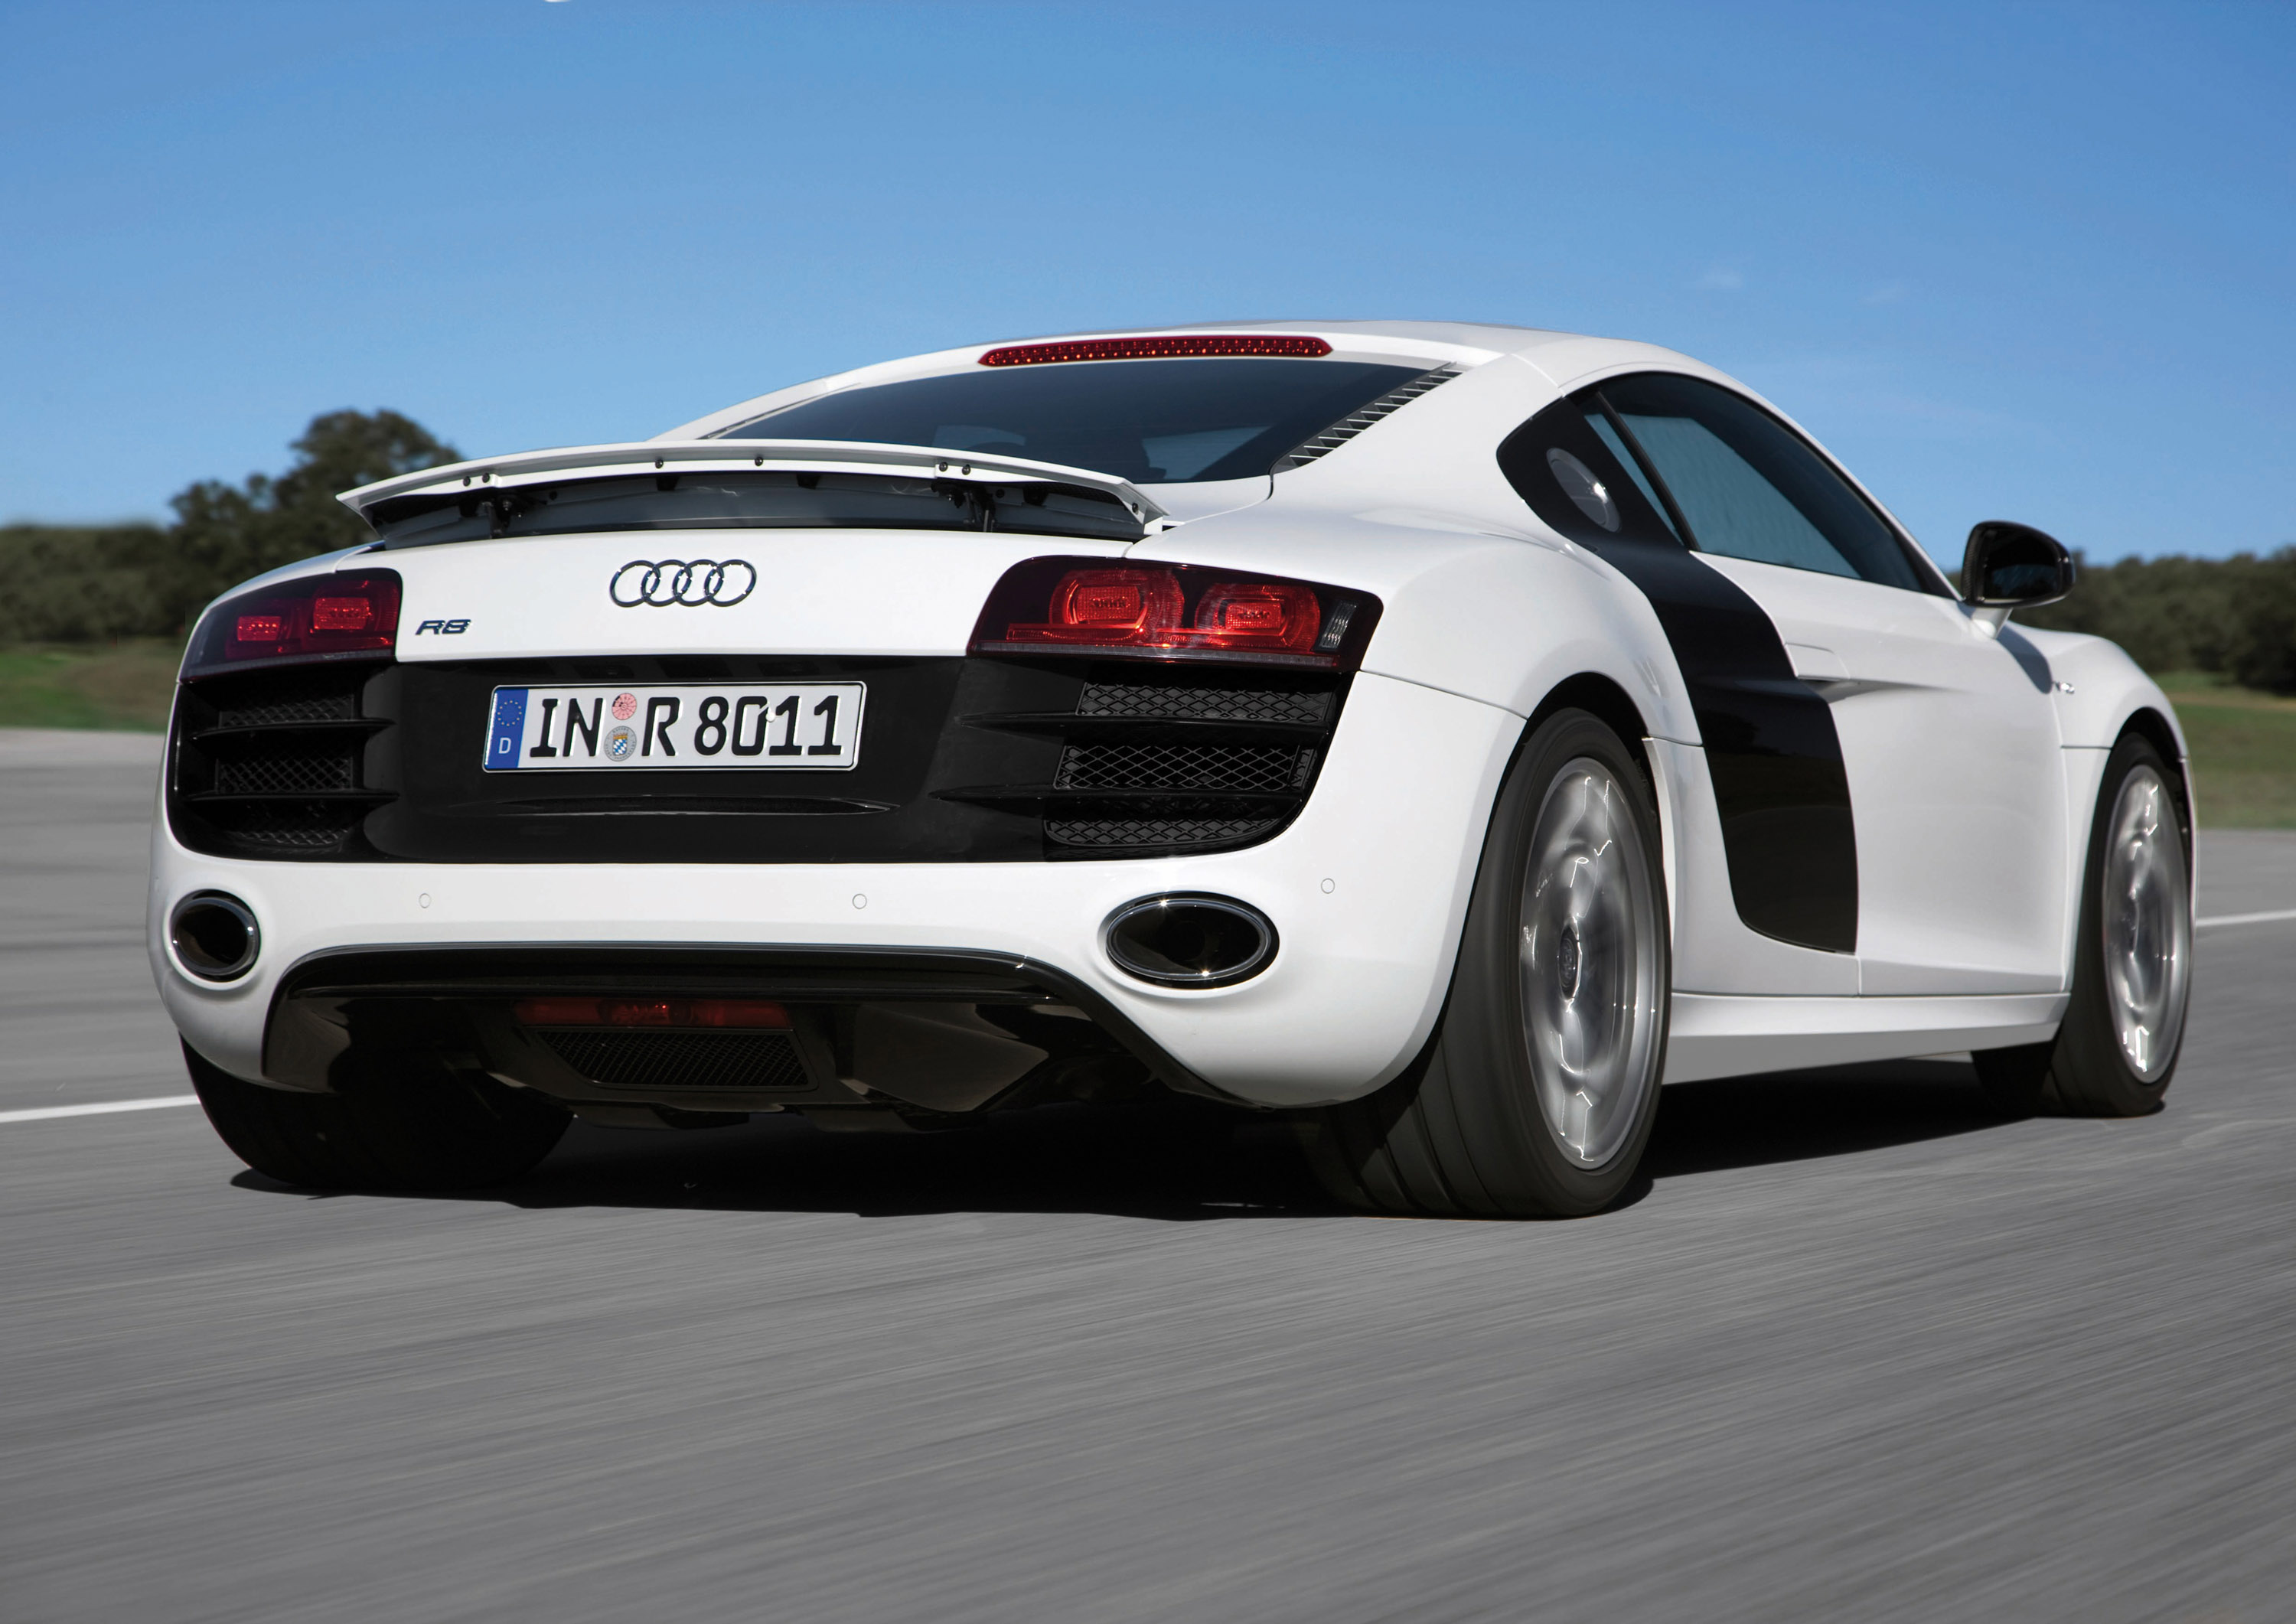 white, cars, Audi, Audi R8, white cars, German cars, rear angle view - desktop wallpaper